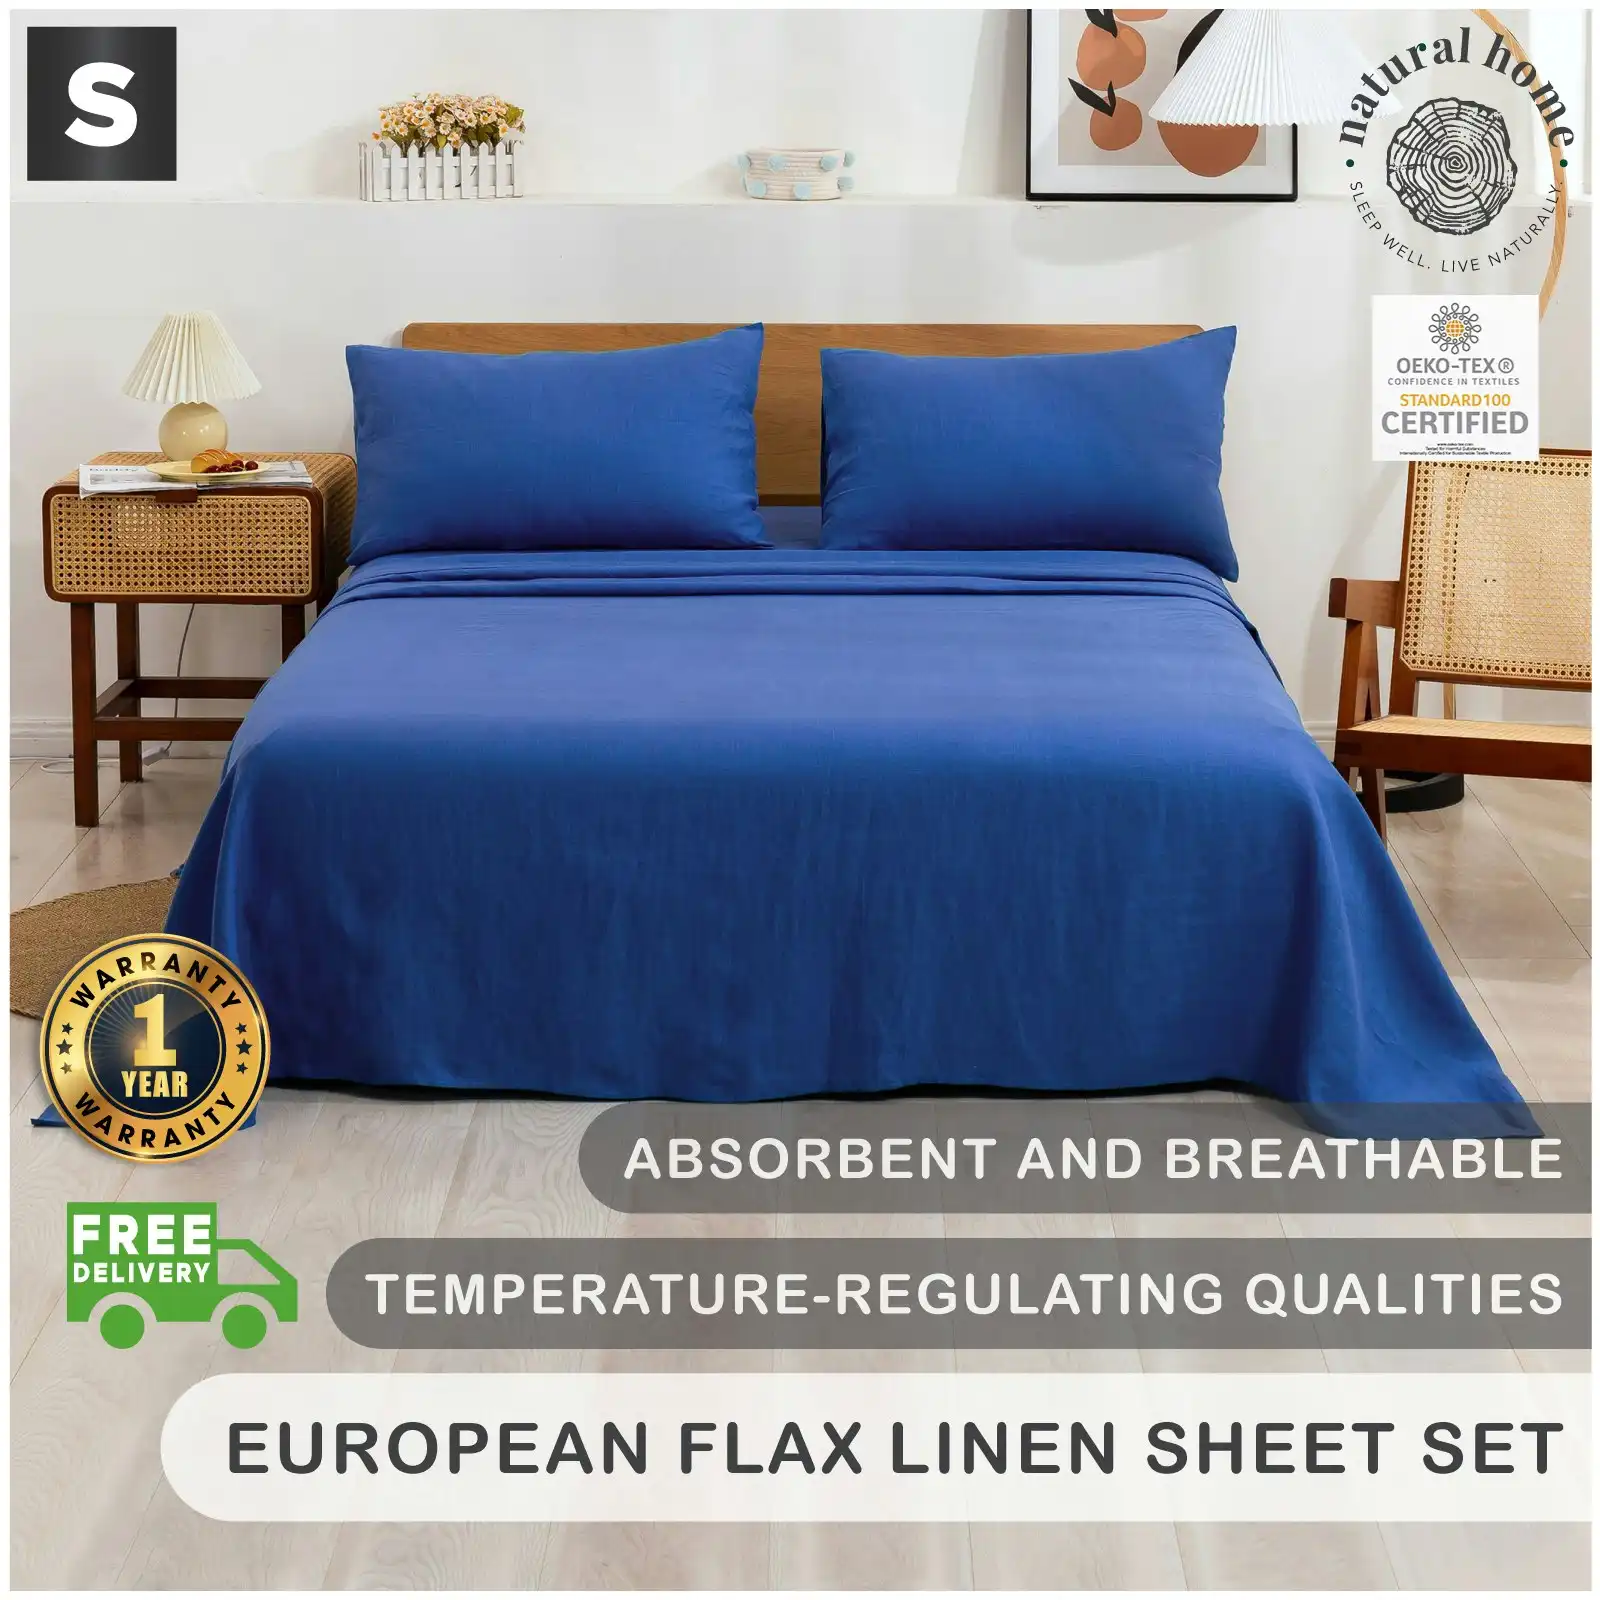 Natural Home 100% European Flax Linen Sheet Set - Deep Blue - Single Bed